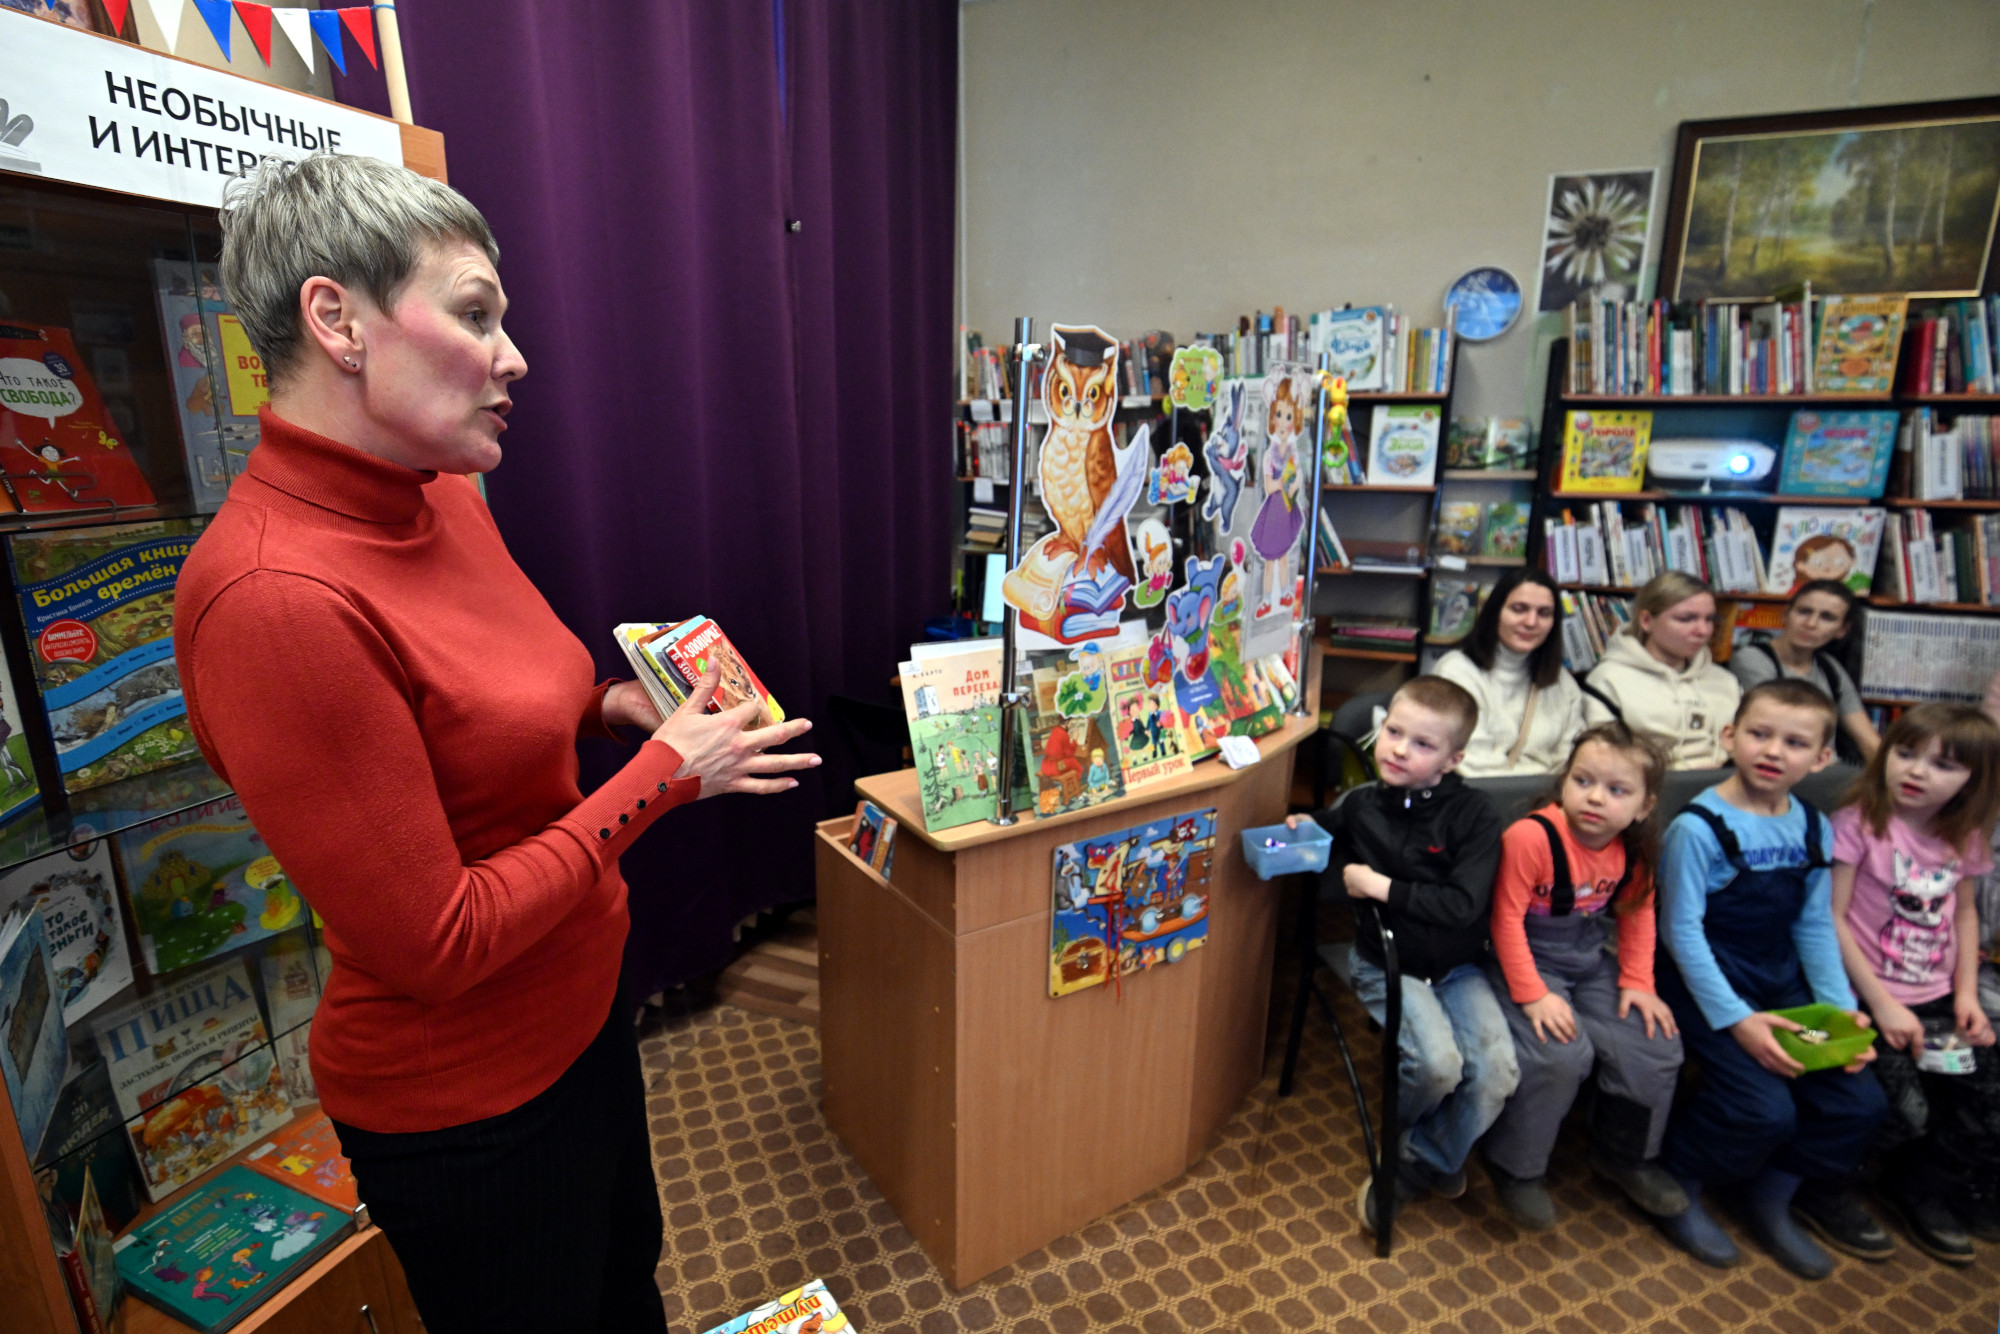 Ирина Лукманова, заведующая библиотекой Парголовская, детские книги, чтение, дети